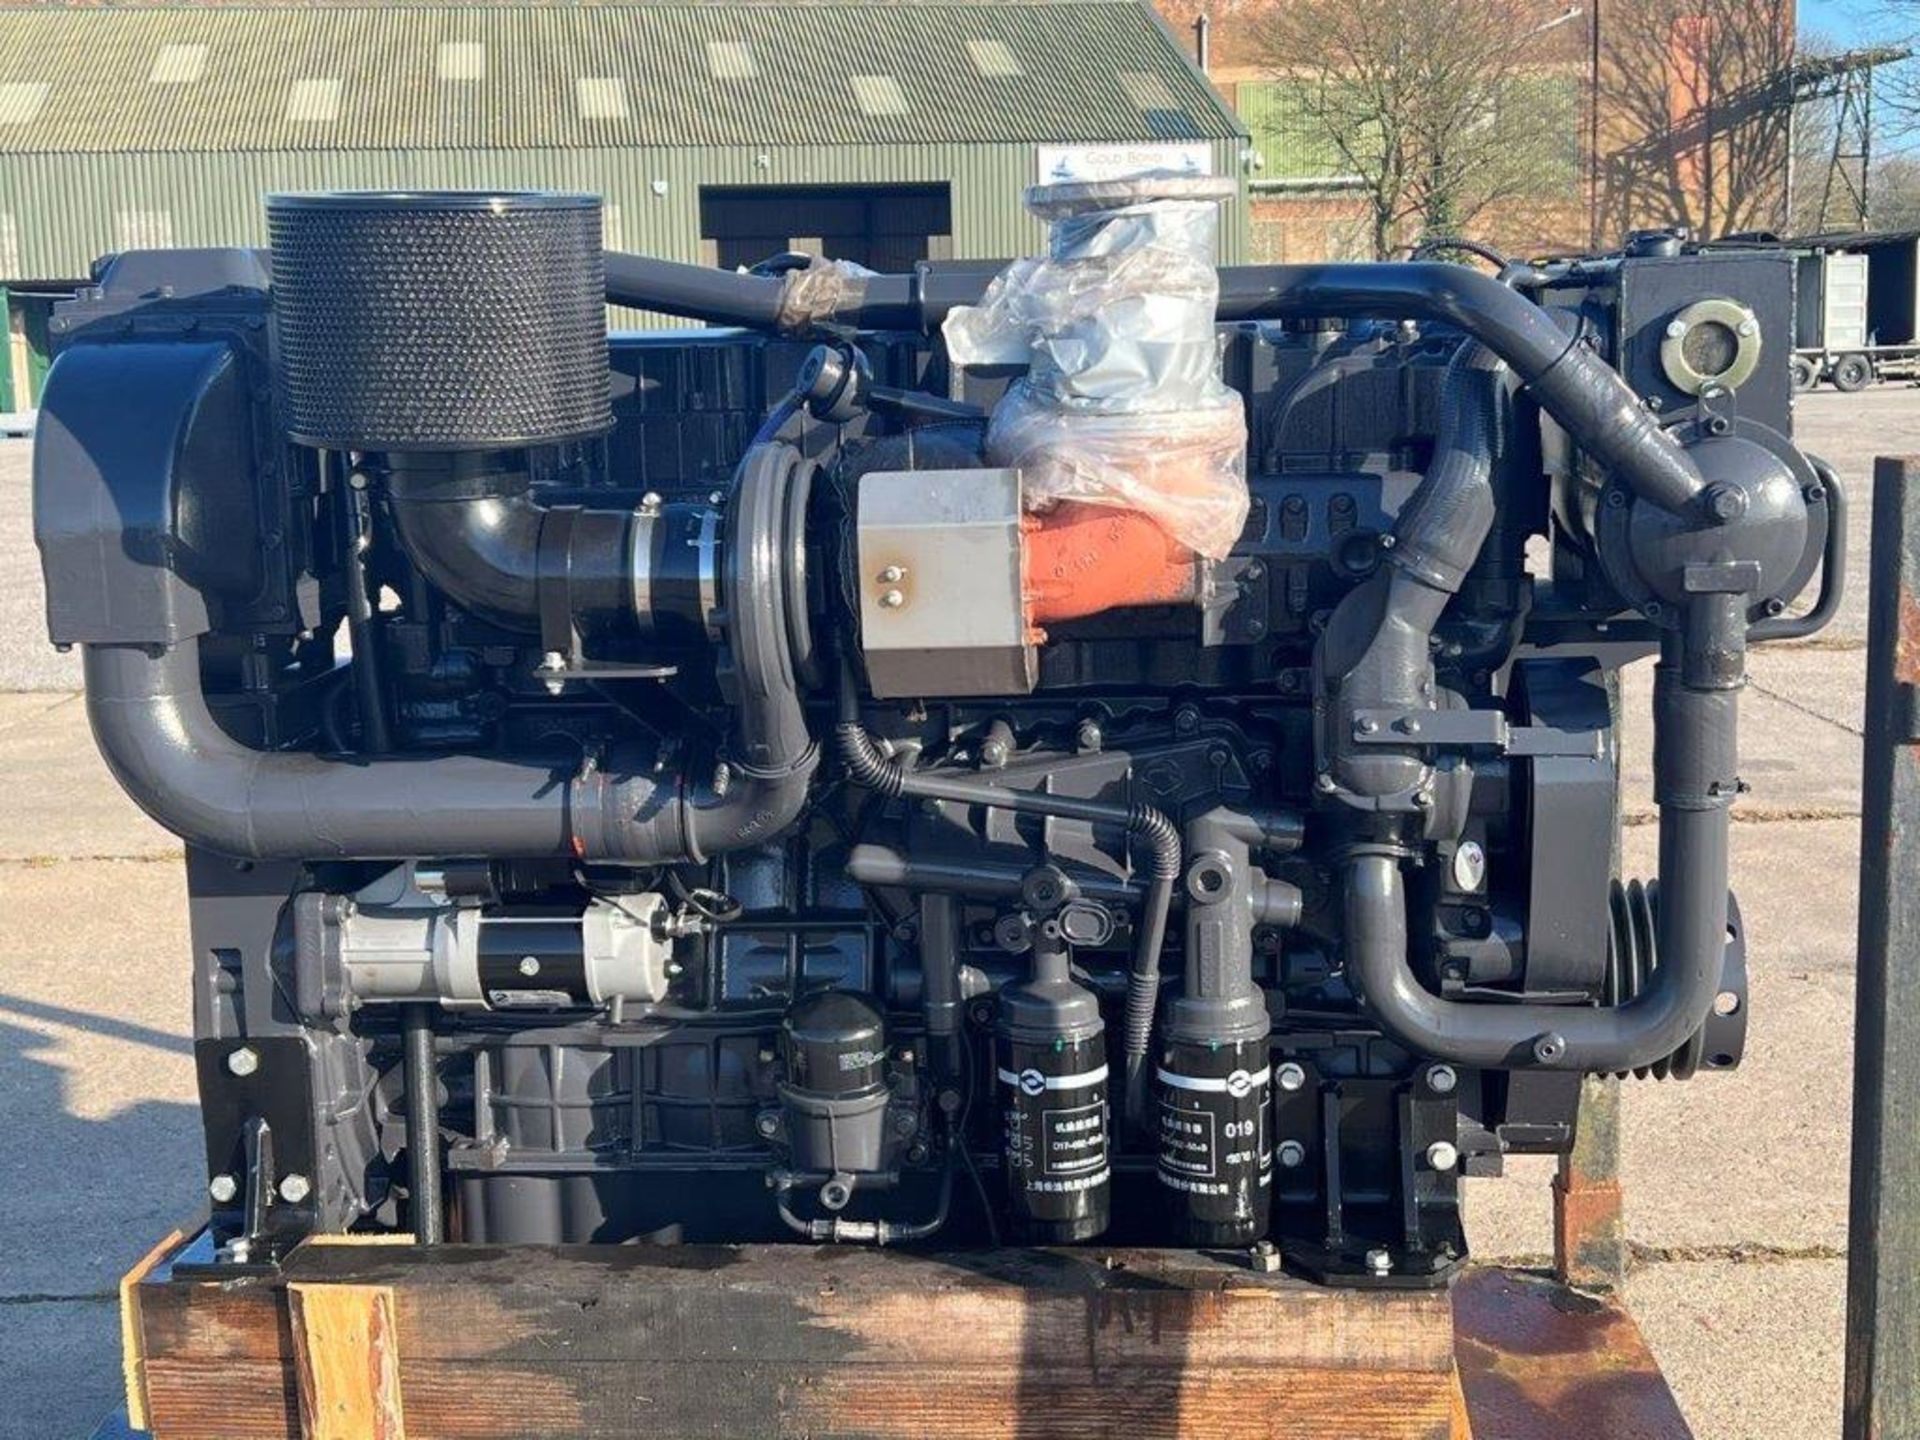 Kelvin SC12E460 Marine Diesel Engine Unused - Image 2 of 5